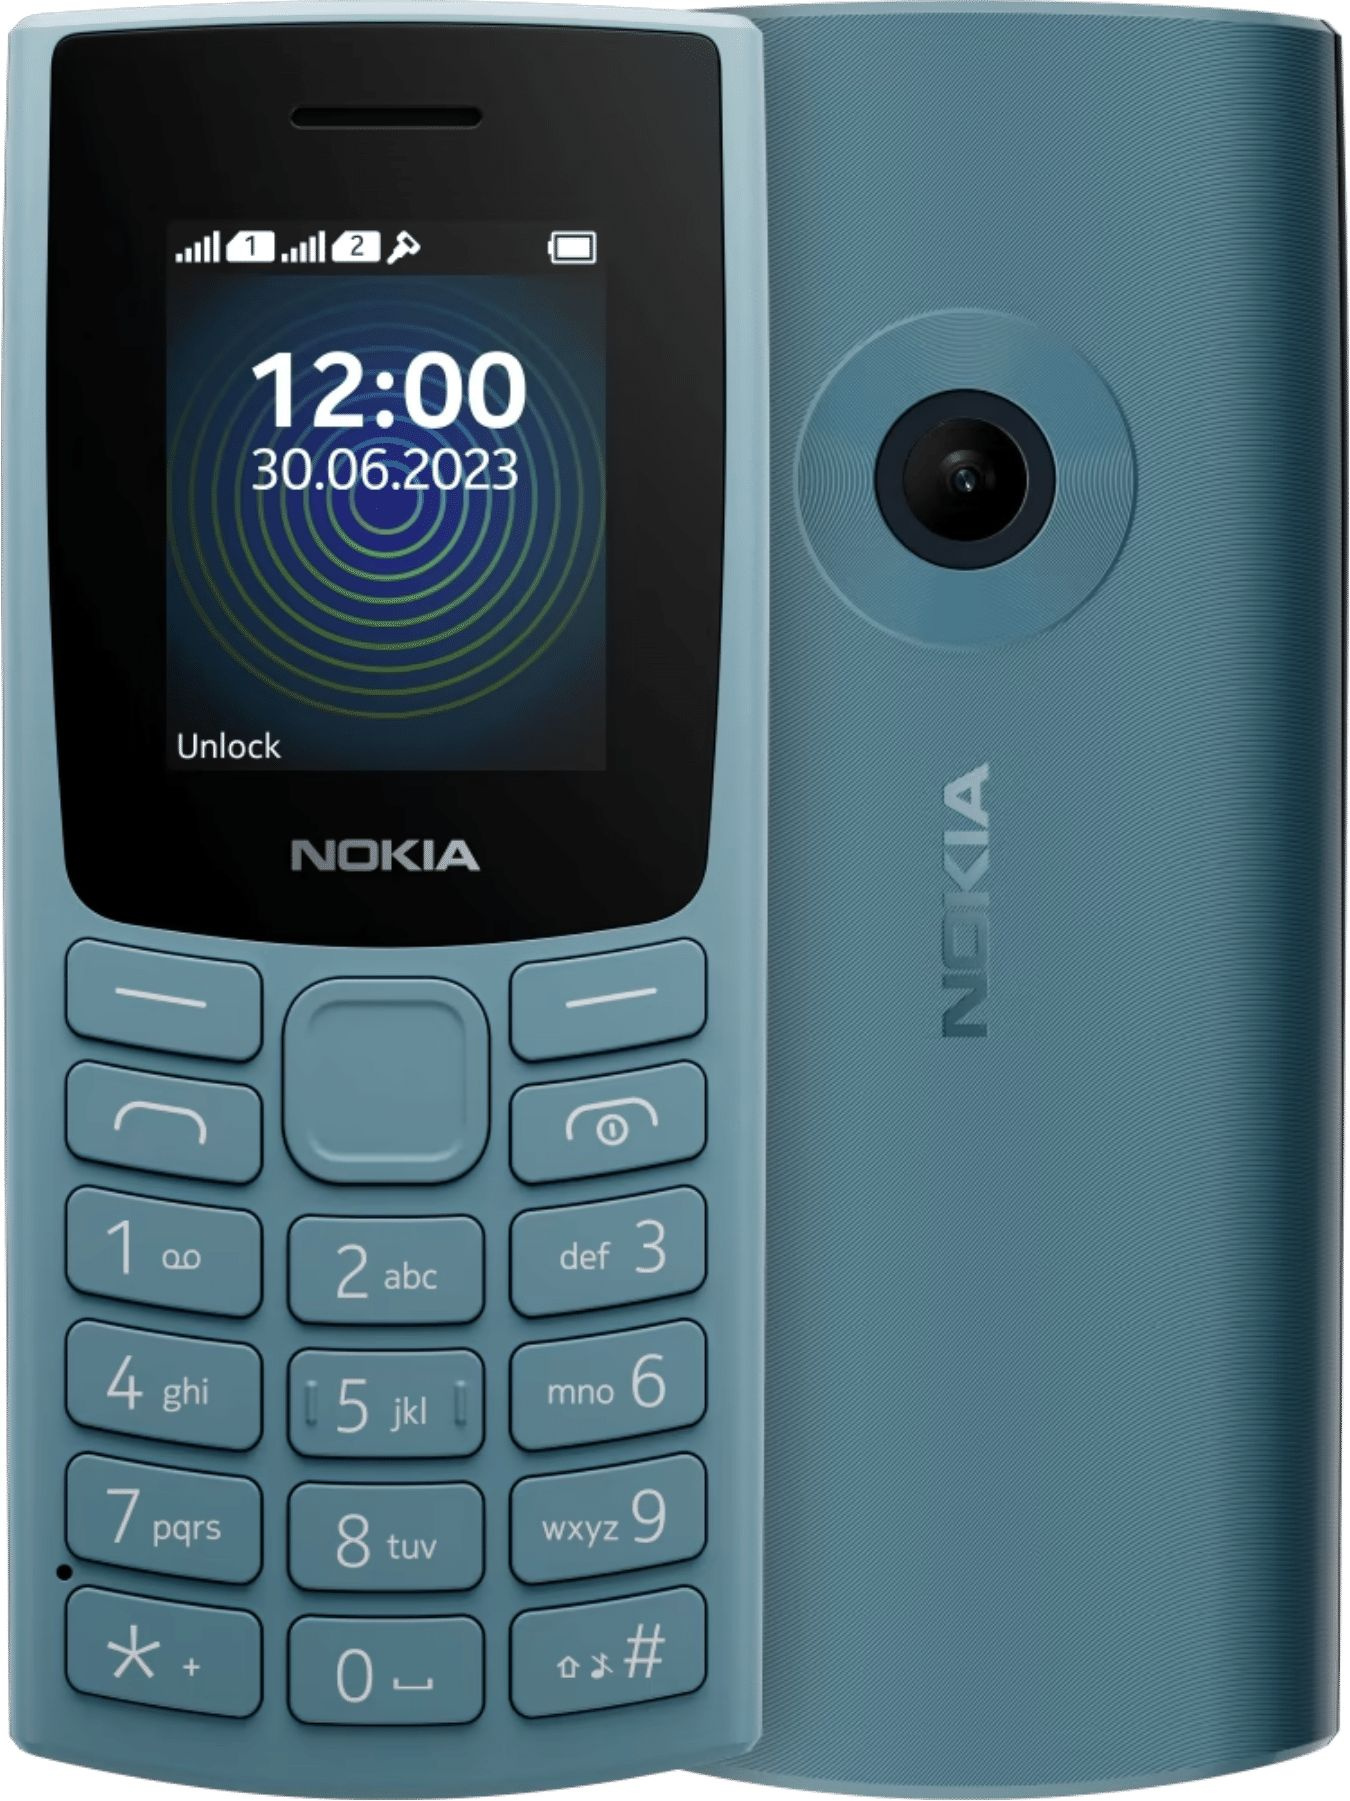 Мобильный телефон Nokia 110 (TA-1567) DS EAC 0.048 синий моноблок 3G 1.8" 240x320 Series 30+ 0.3Mpix GSM900/ 1800 MP3 (1GF019FPG3C01)